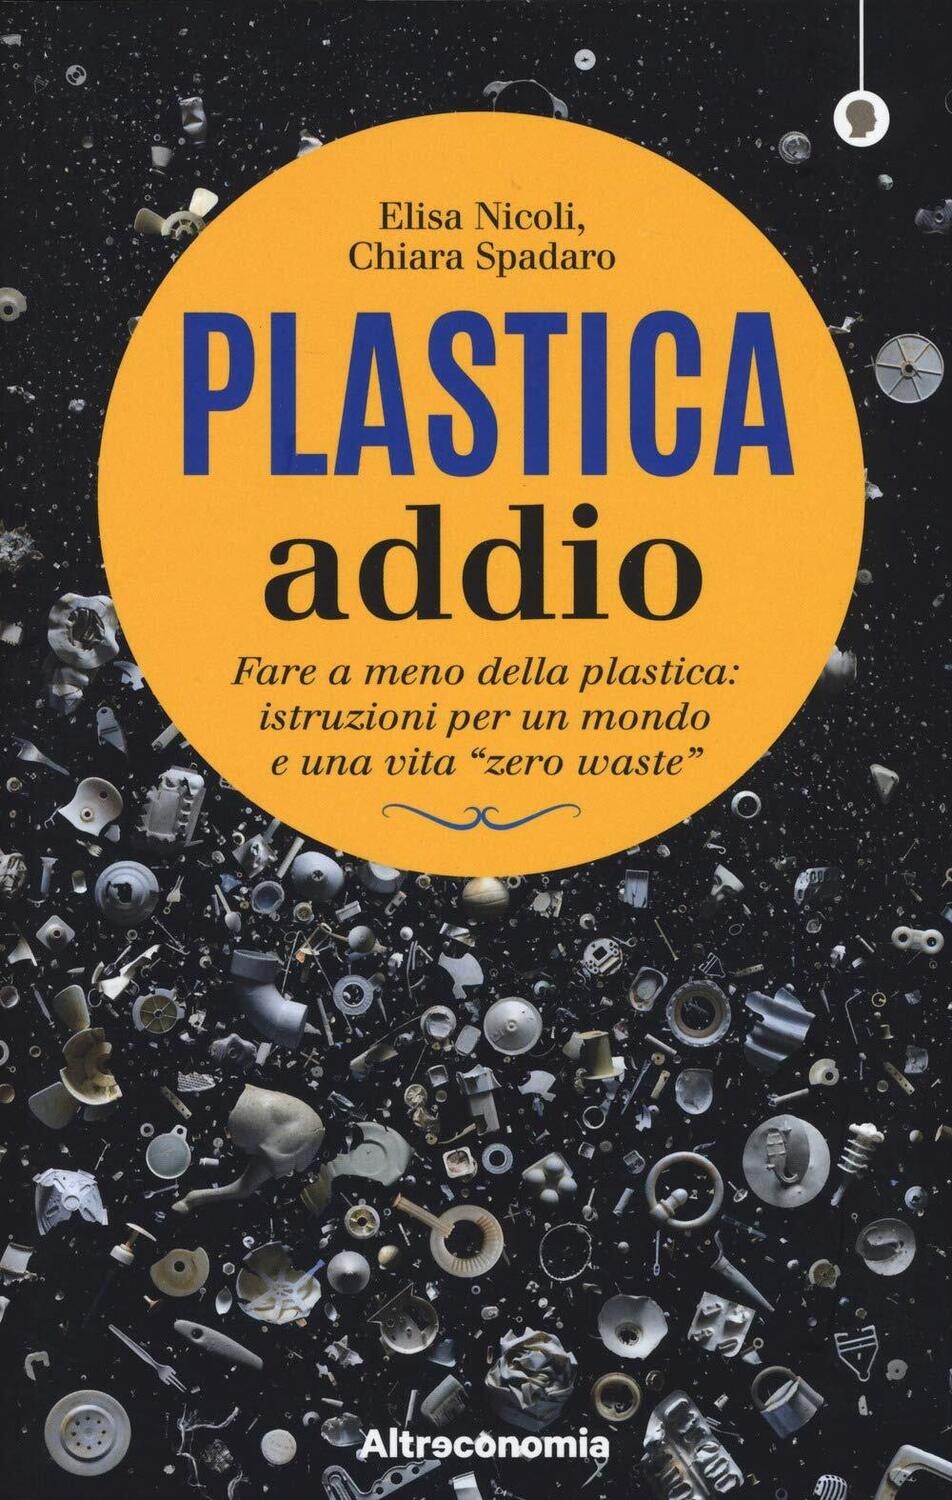 Plastica addio - Libro di Elisa Nicoli e Chiara Spadaro